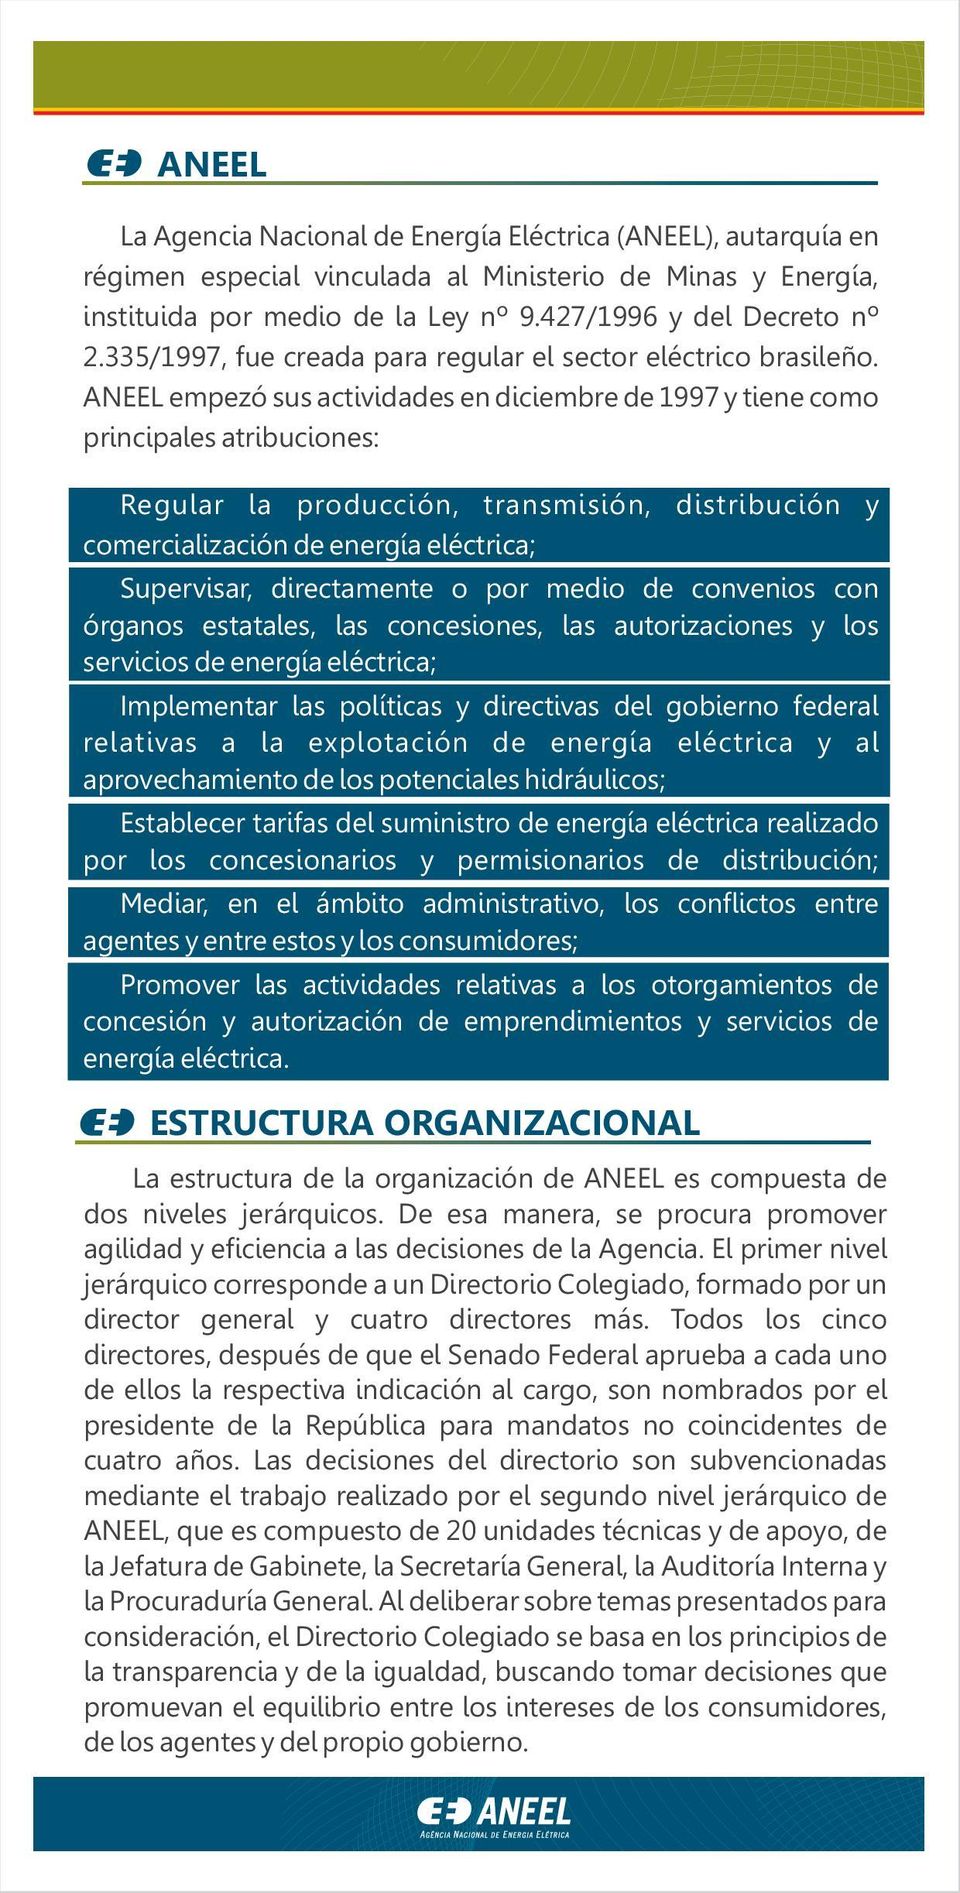 ANEEL empezó sus actividades en diciembre de 1997 y tiene como principales atribuciones: Regular la producción, transmisión, distribución y comercialización de energía eléctrica; Supervisar,